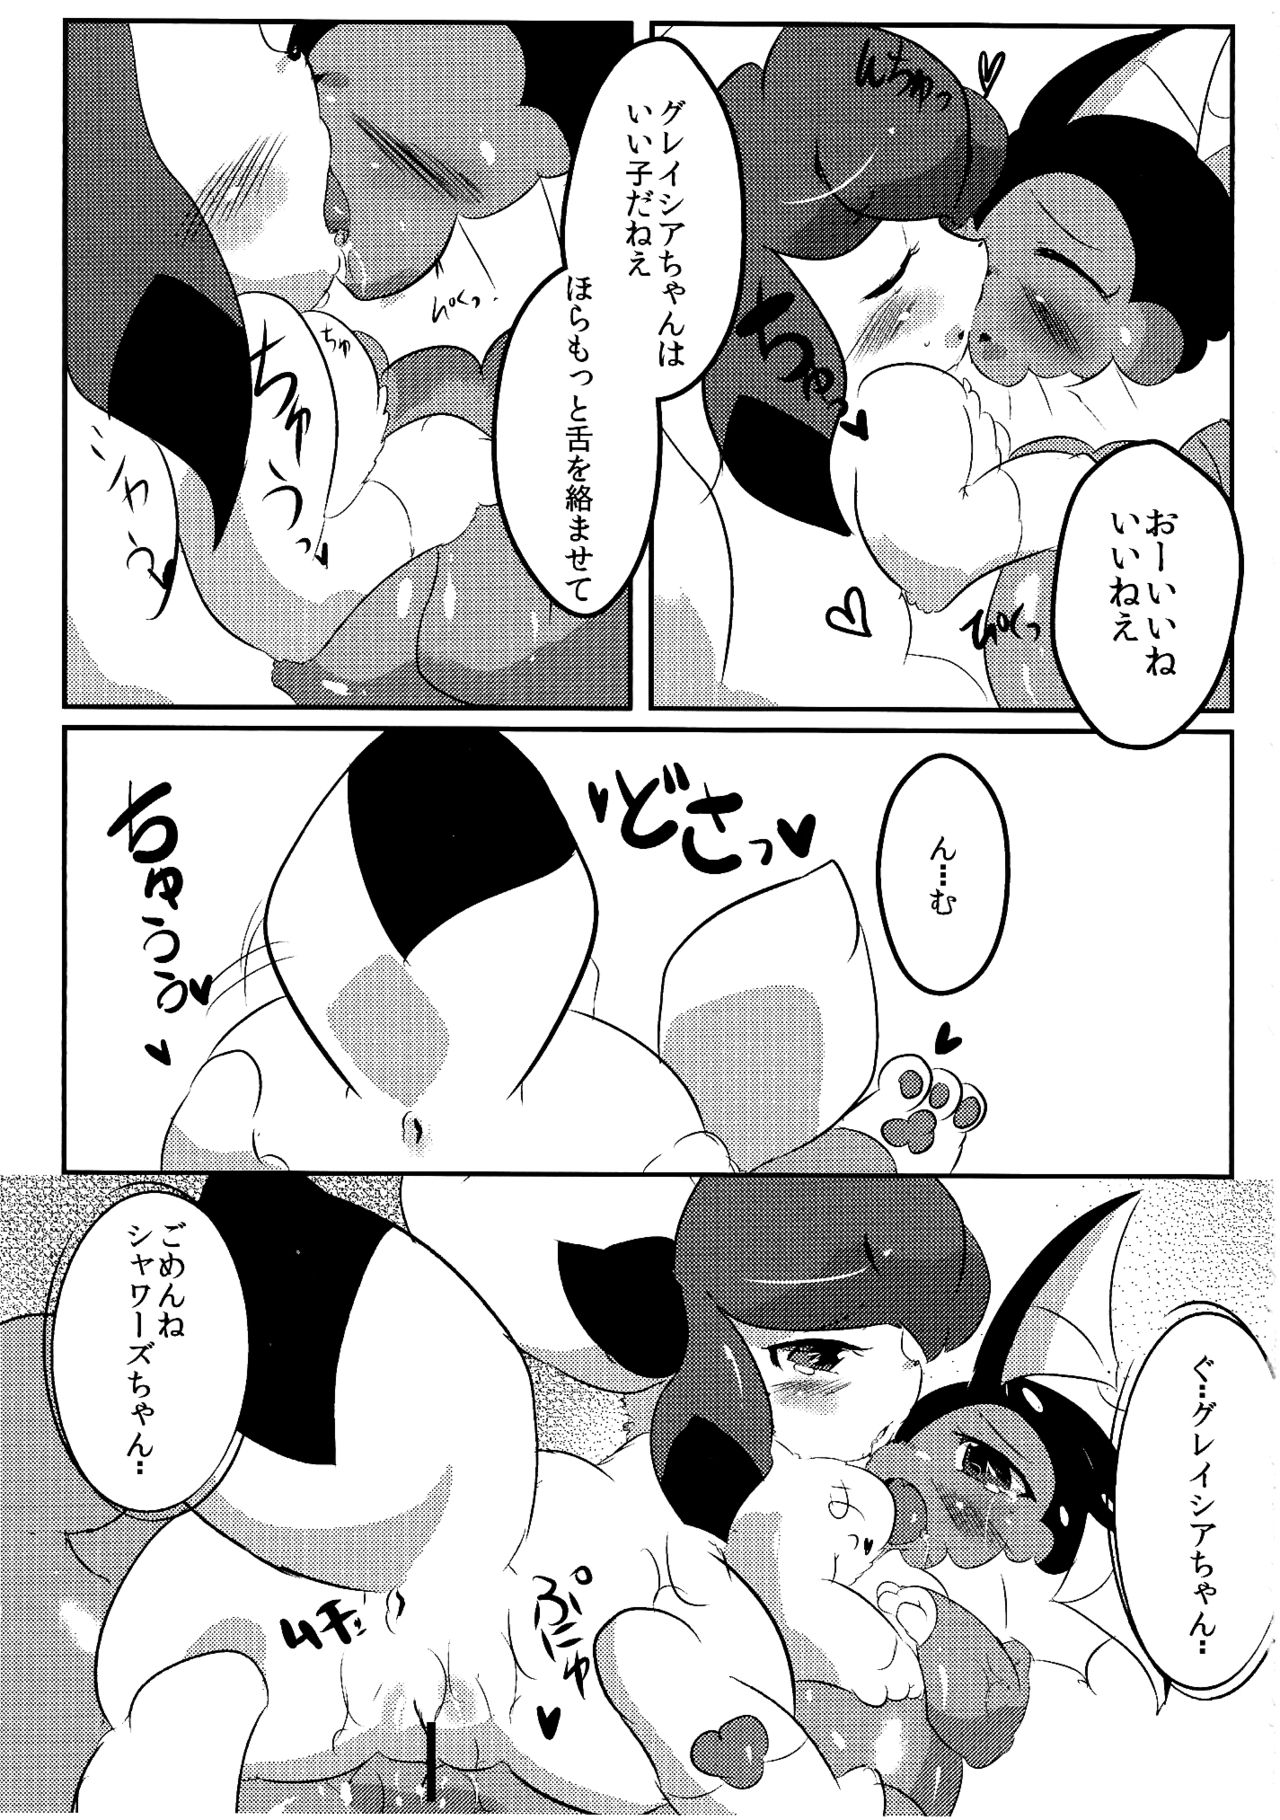 (Fur-st) [Mochi-ya (Dango)] Showers Hon (Pokemon) (ふぁーすと) [もち屋 (団子)] しゃわほんっ (ポケットモンスター)